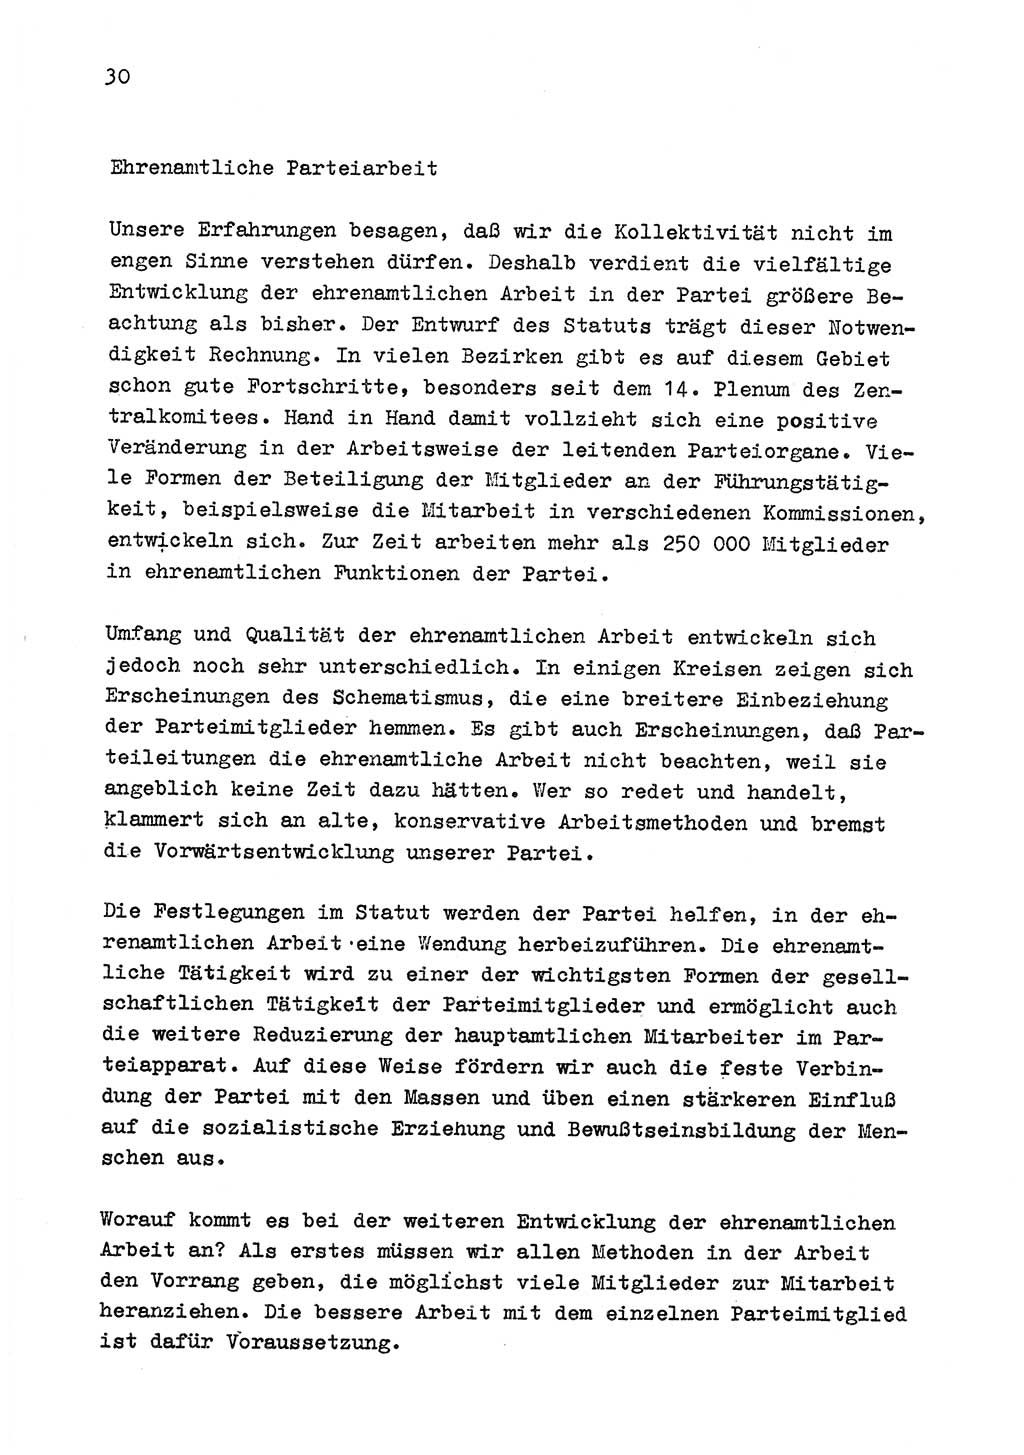 Zu Fragen der Parteiarbeit [Sozialistische Einheitspartei Deutschlands (SED) Deutsche Demokratische Republik (DDR)] 1979, Seite 30 (Fr. PA SED DDR 1979, S. 30)